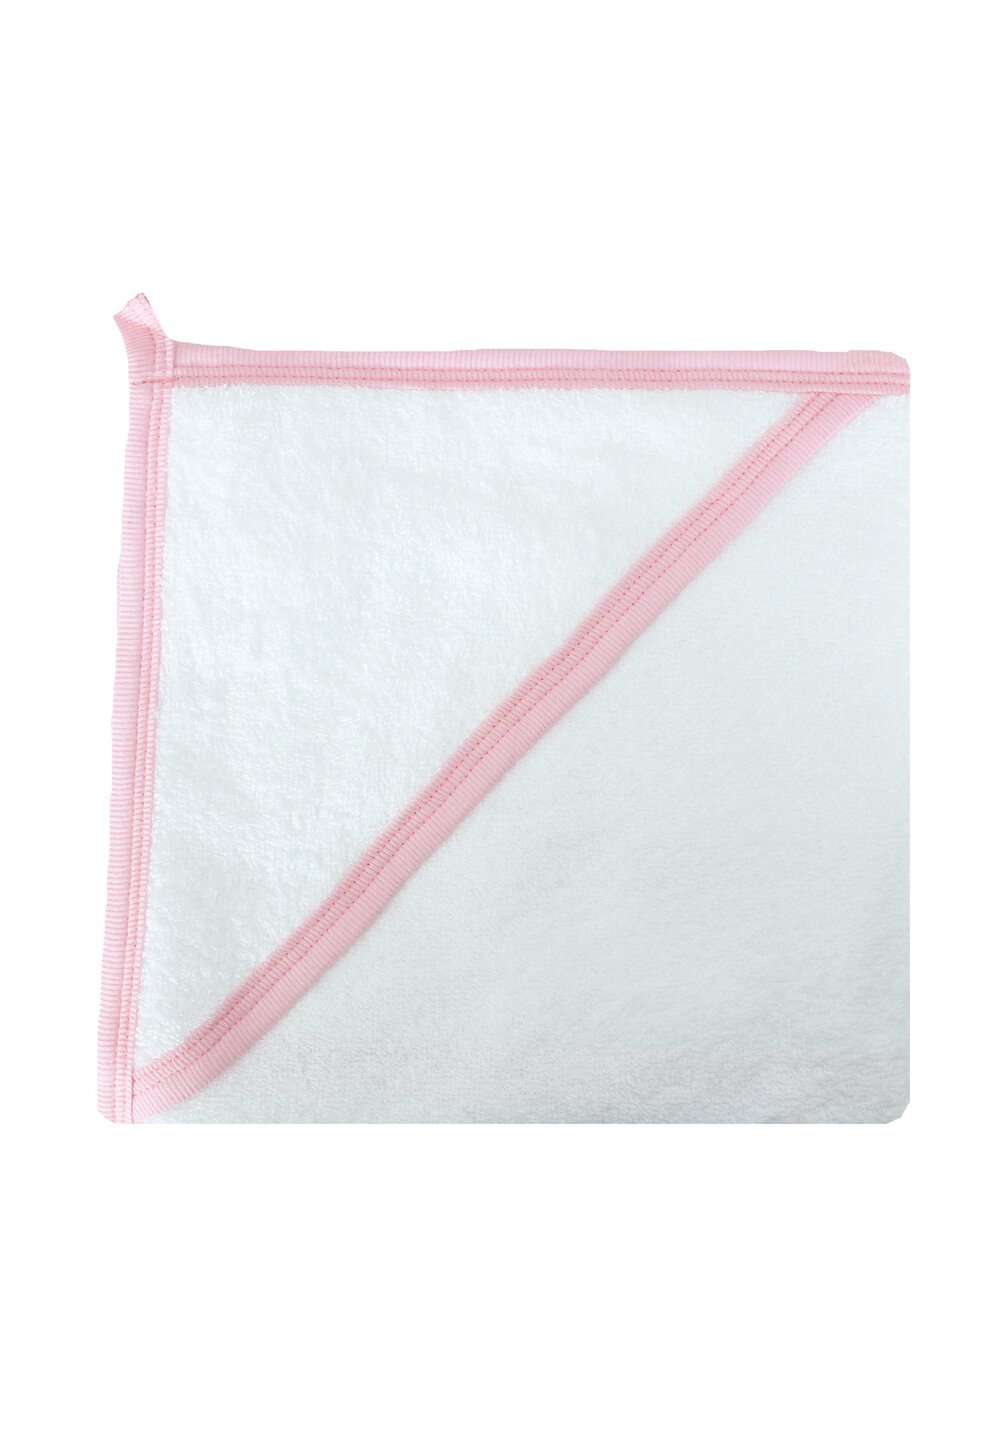 Prosop cu gluga, bumbac, alb cu roz, 80 x 100 cm 100